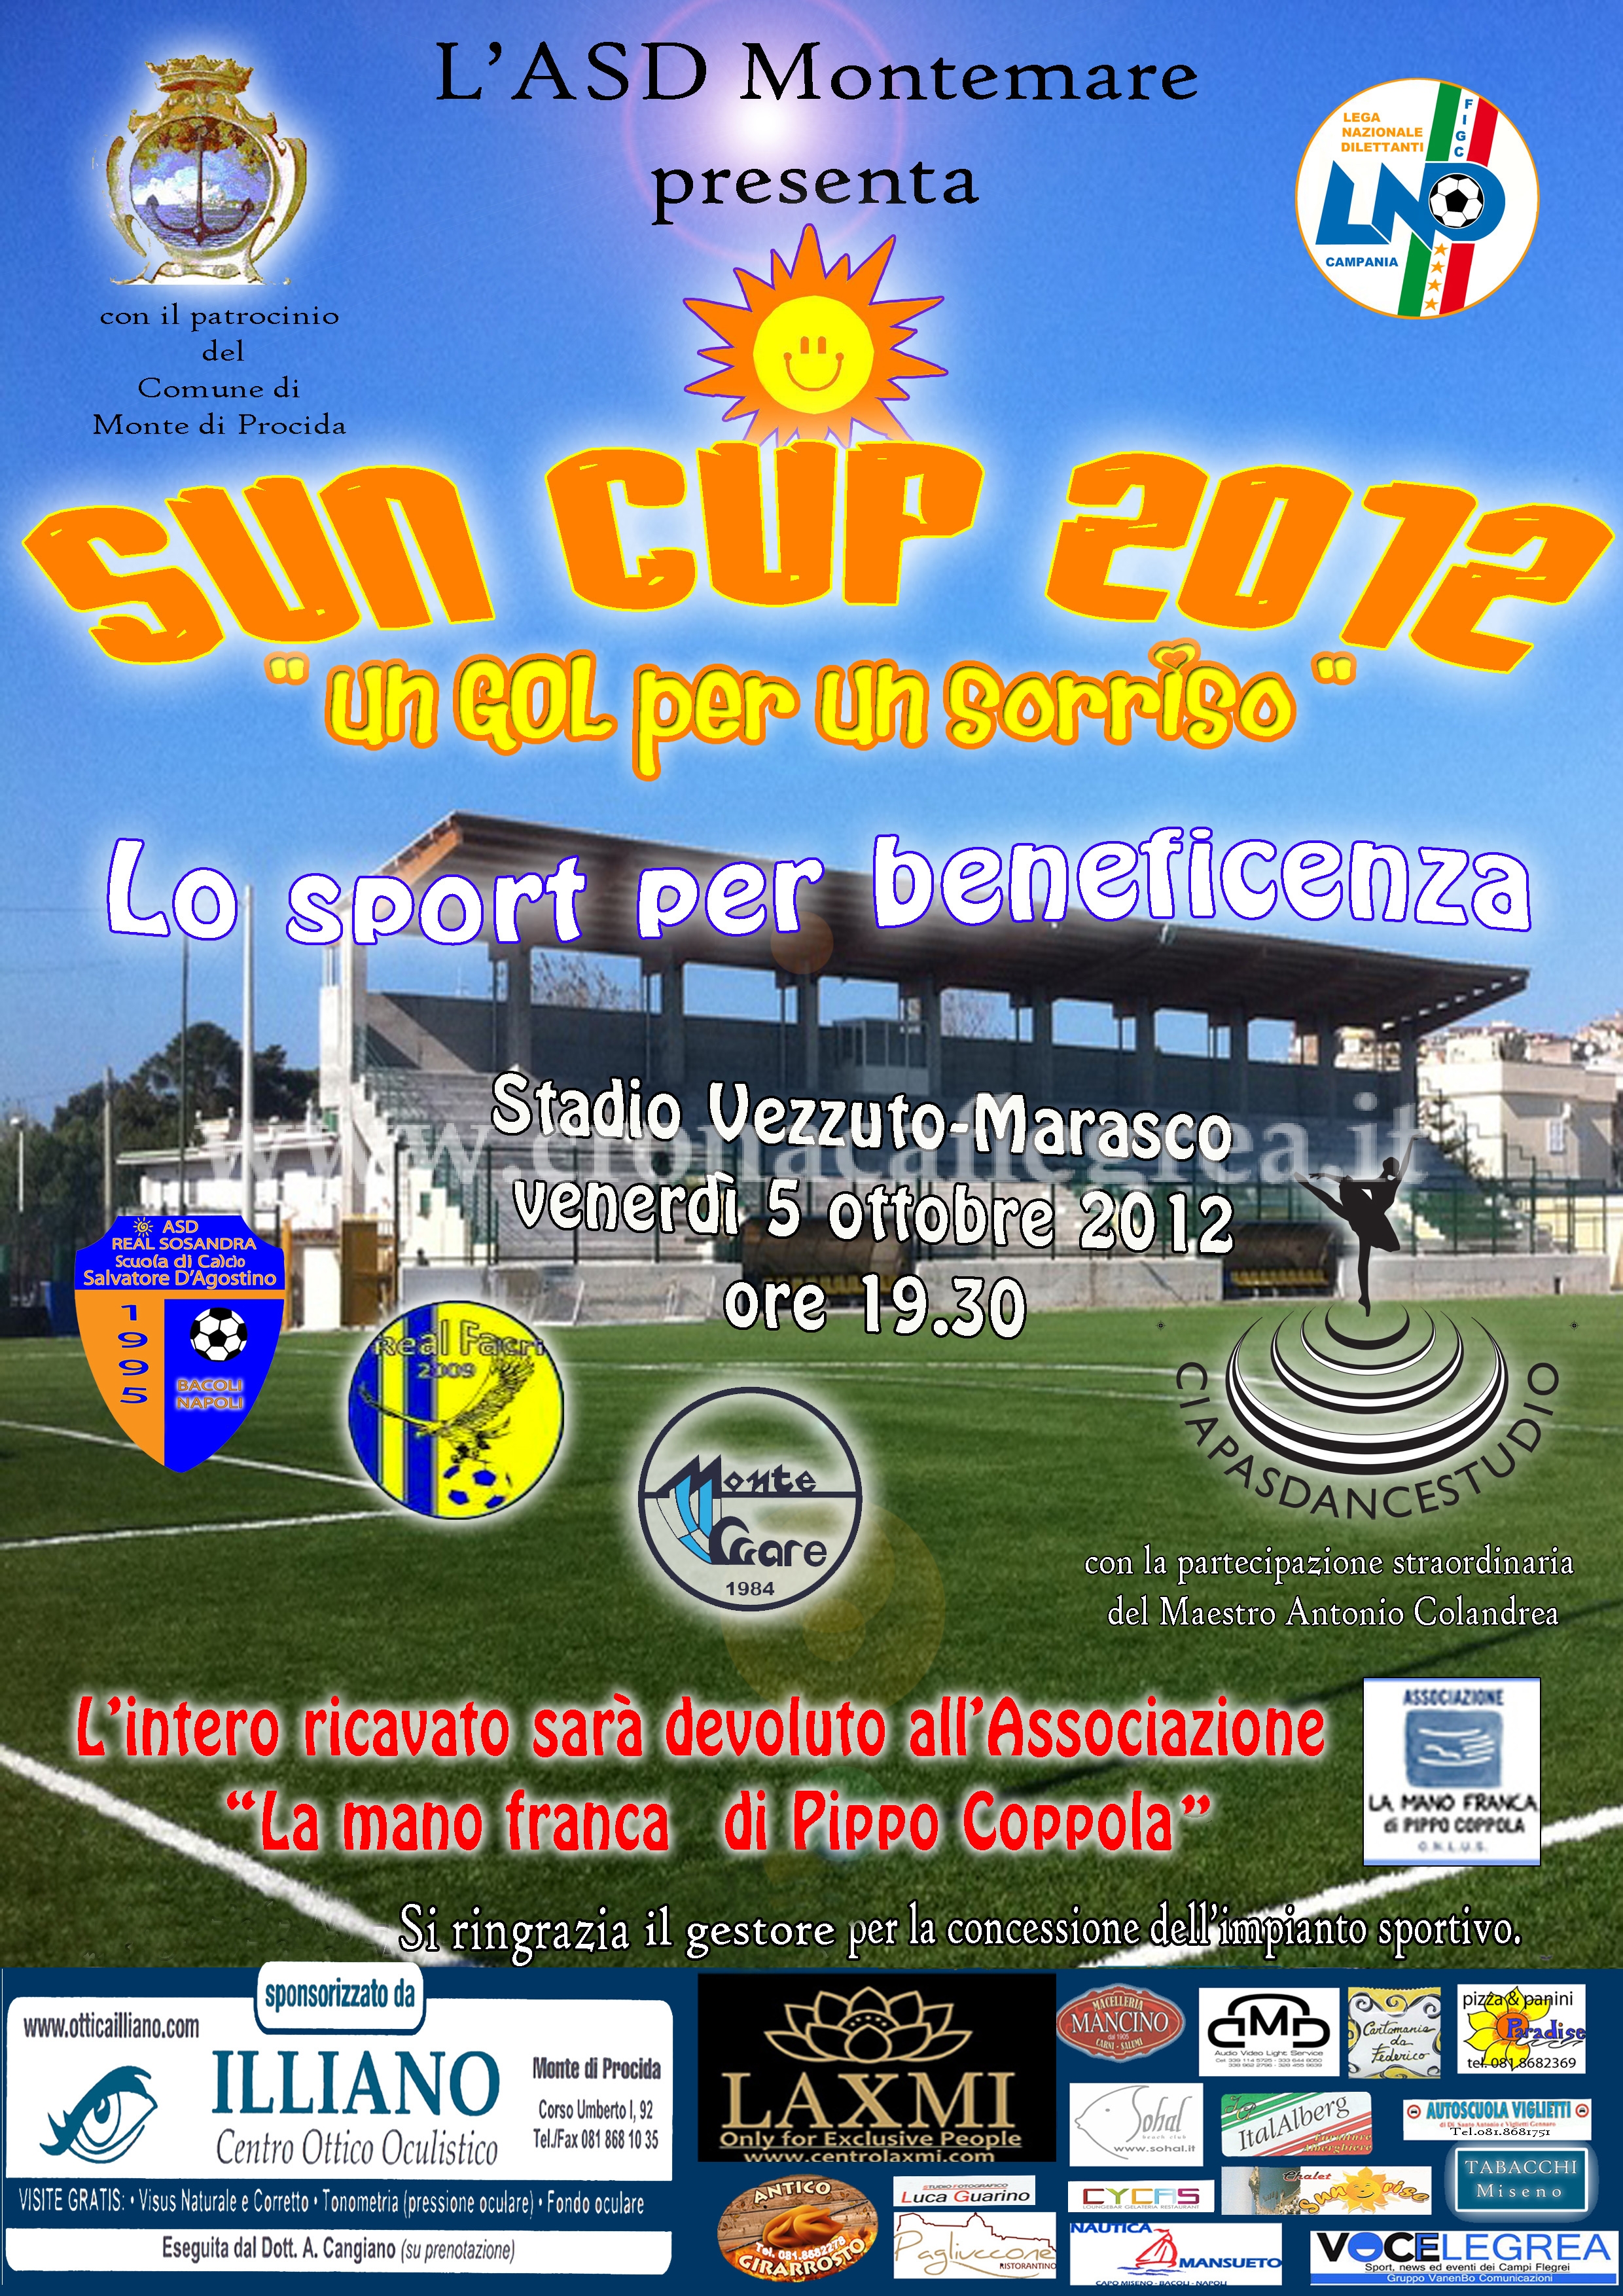 MONTE DI PROCIDA/ Sun Cup 2012, un gol per un sorriso